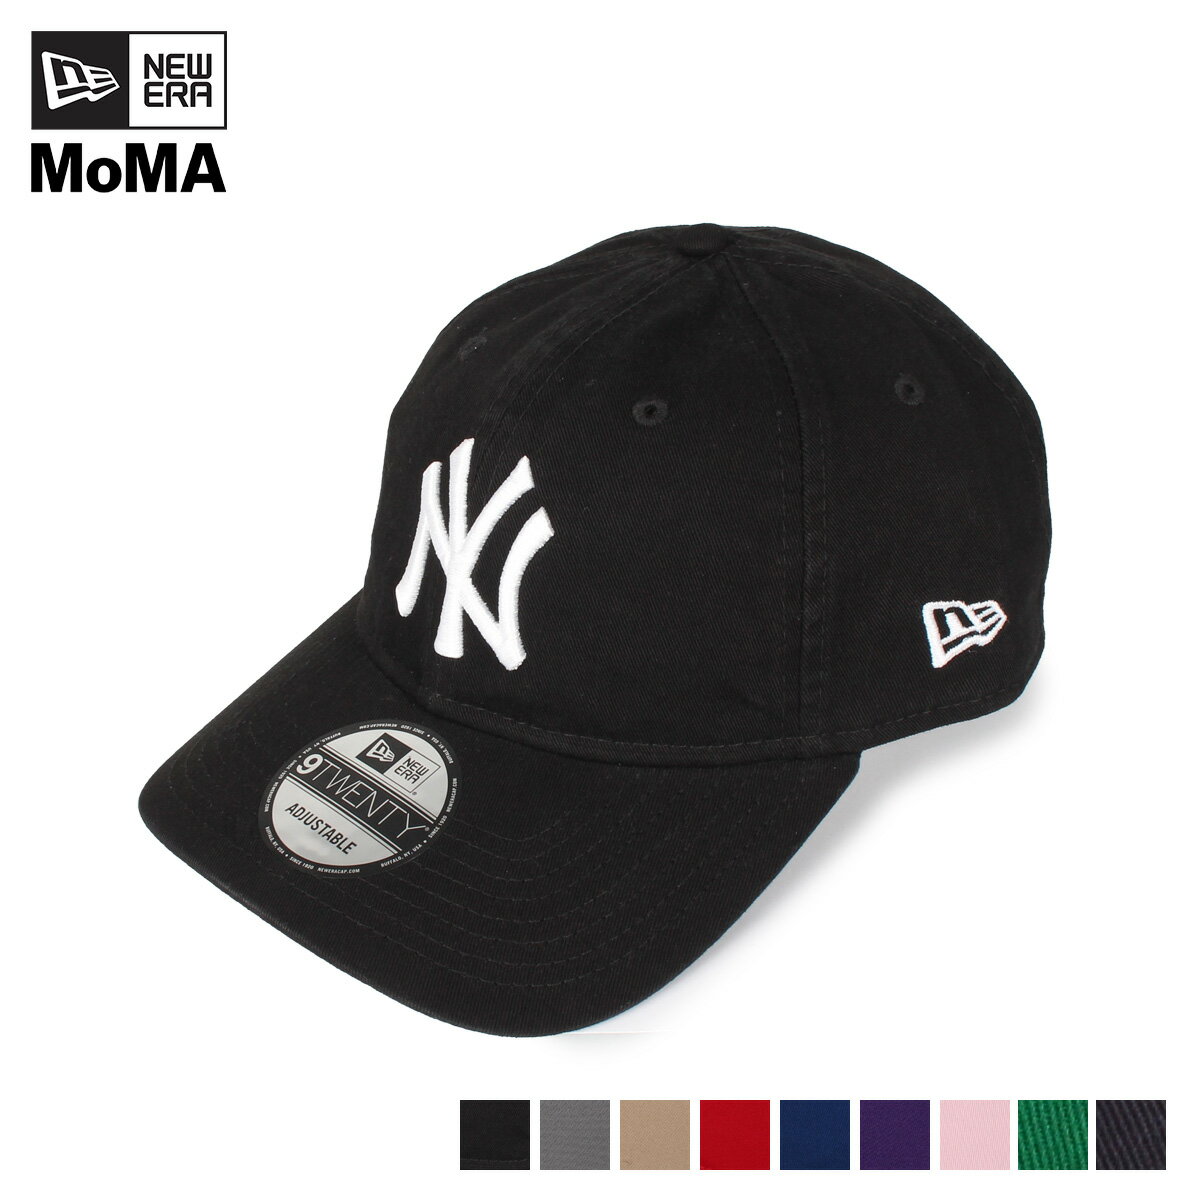 ニューエラ NEW ERA モマ MoMA キャップ 帽子 ニューヨーク ヤンキース メンズ レディース コラボ NY YANKEES 9TWENTY ブラック グレー ベージュ レッド ブルー パープル ピンク グリーン ネイビー 黒 300012-300011